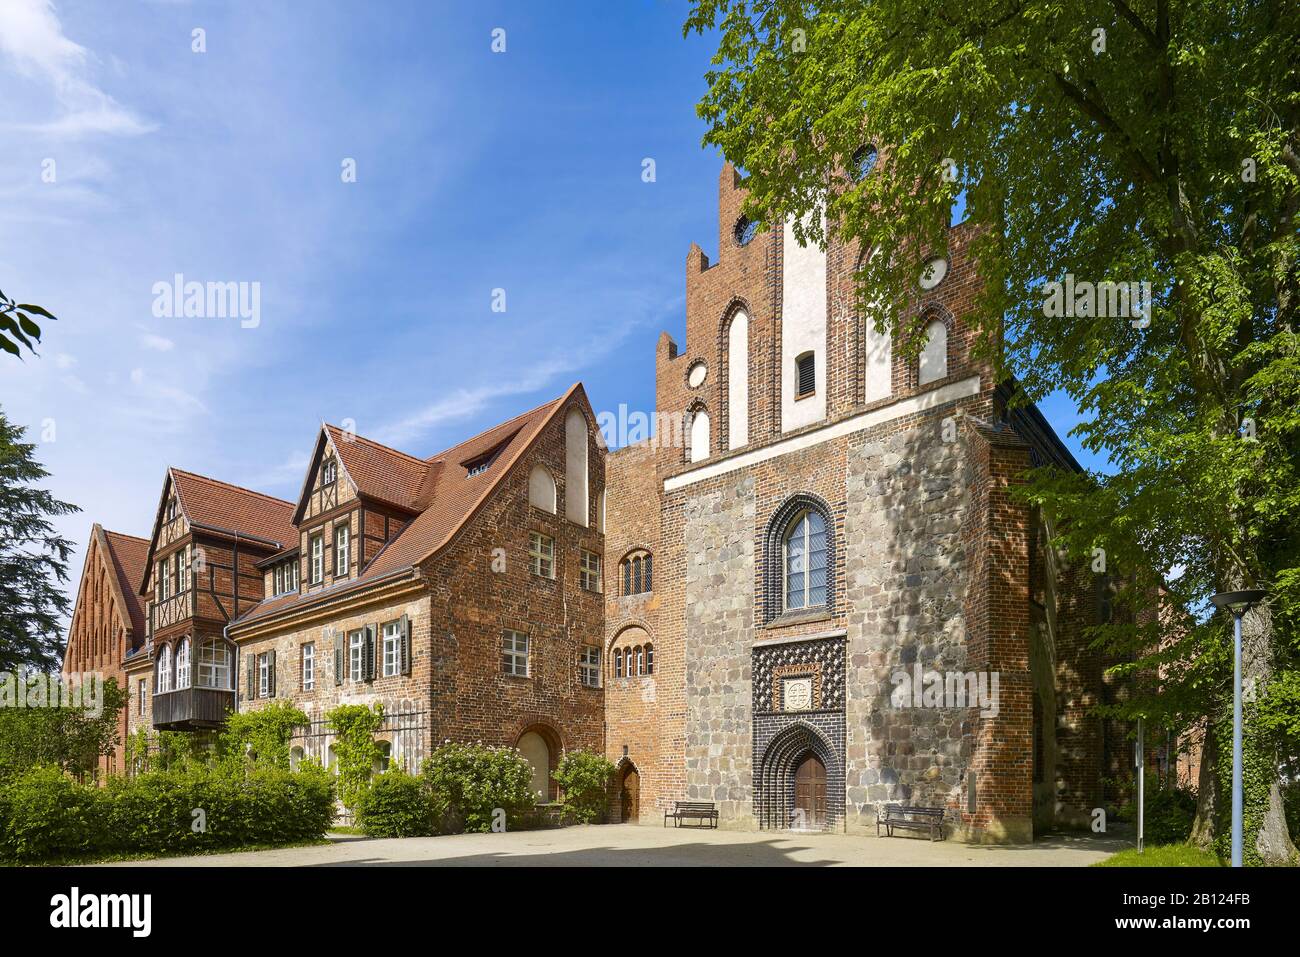 Kloster Stift zum Heiligengrabe, Heiligengrabe, Brandenburg, Germany Stock Photo